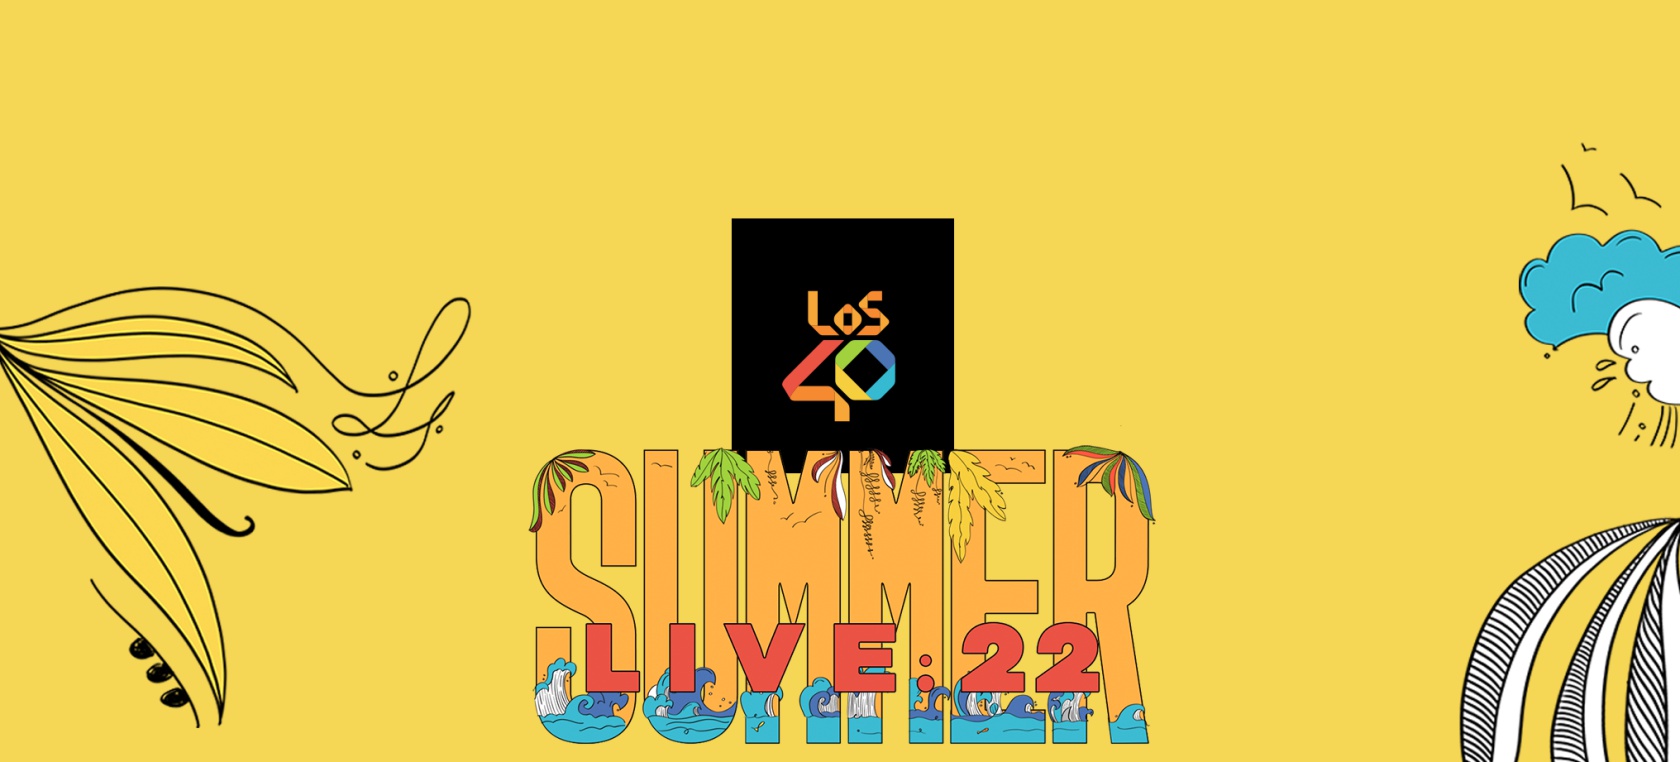 LOS40 Summer Live 2022: fechas y ciudades de la gira de verano más grande y extensa de LOS40